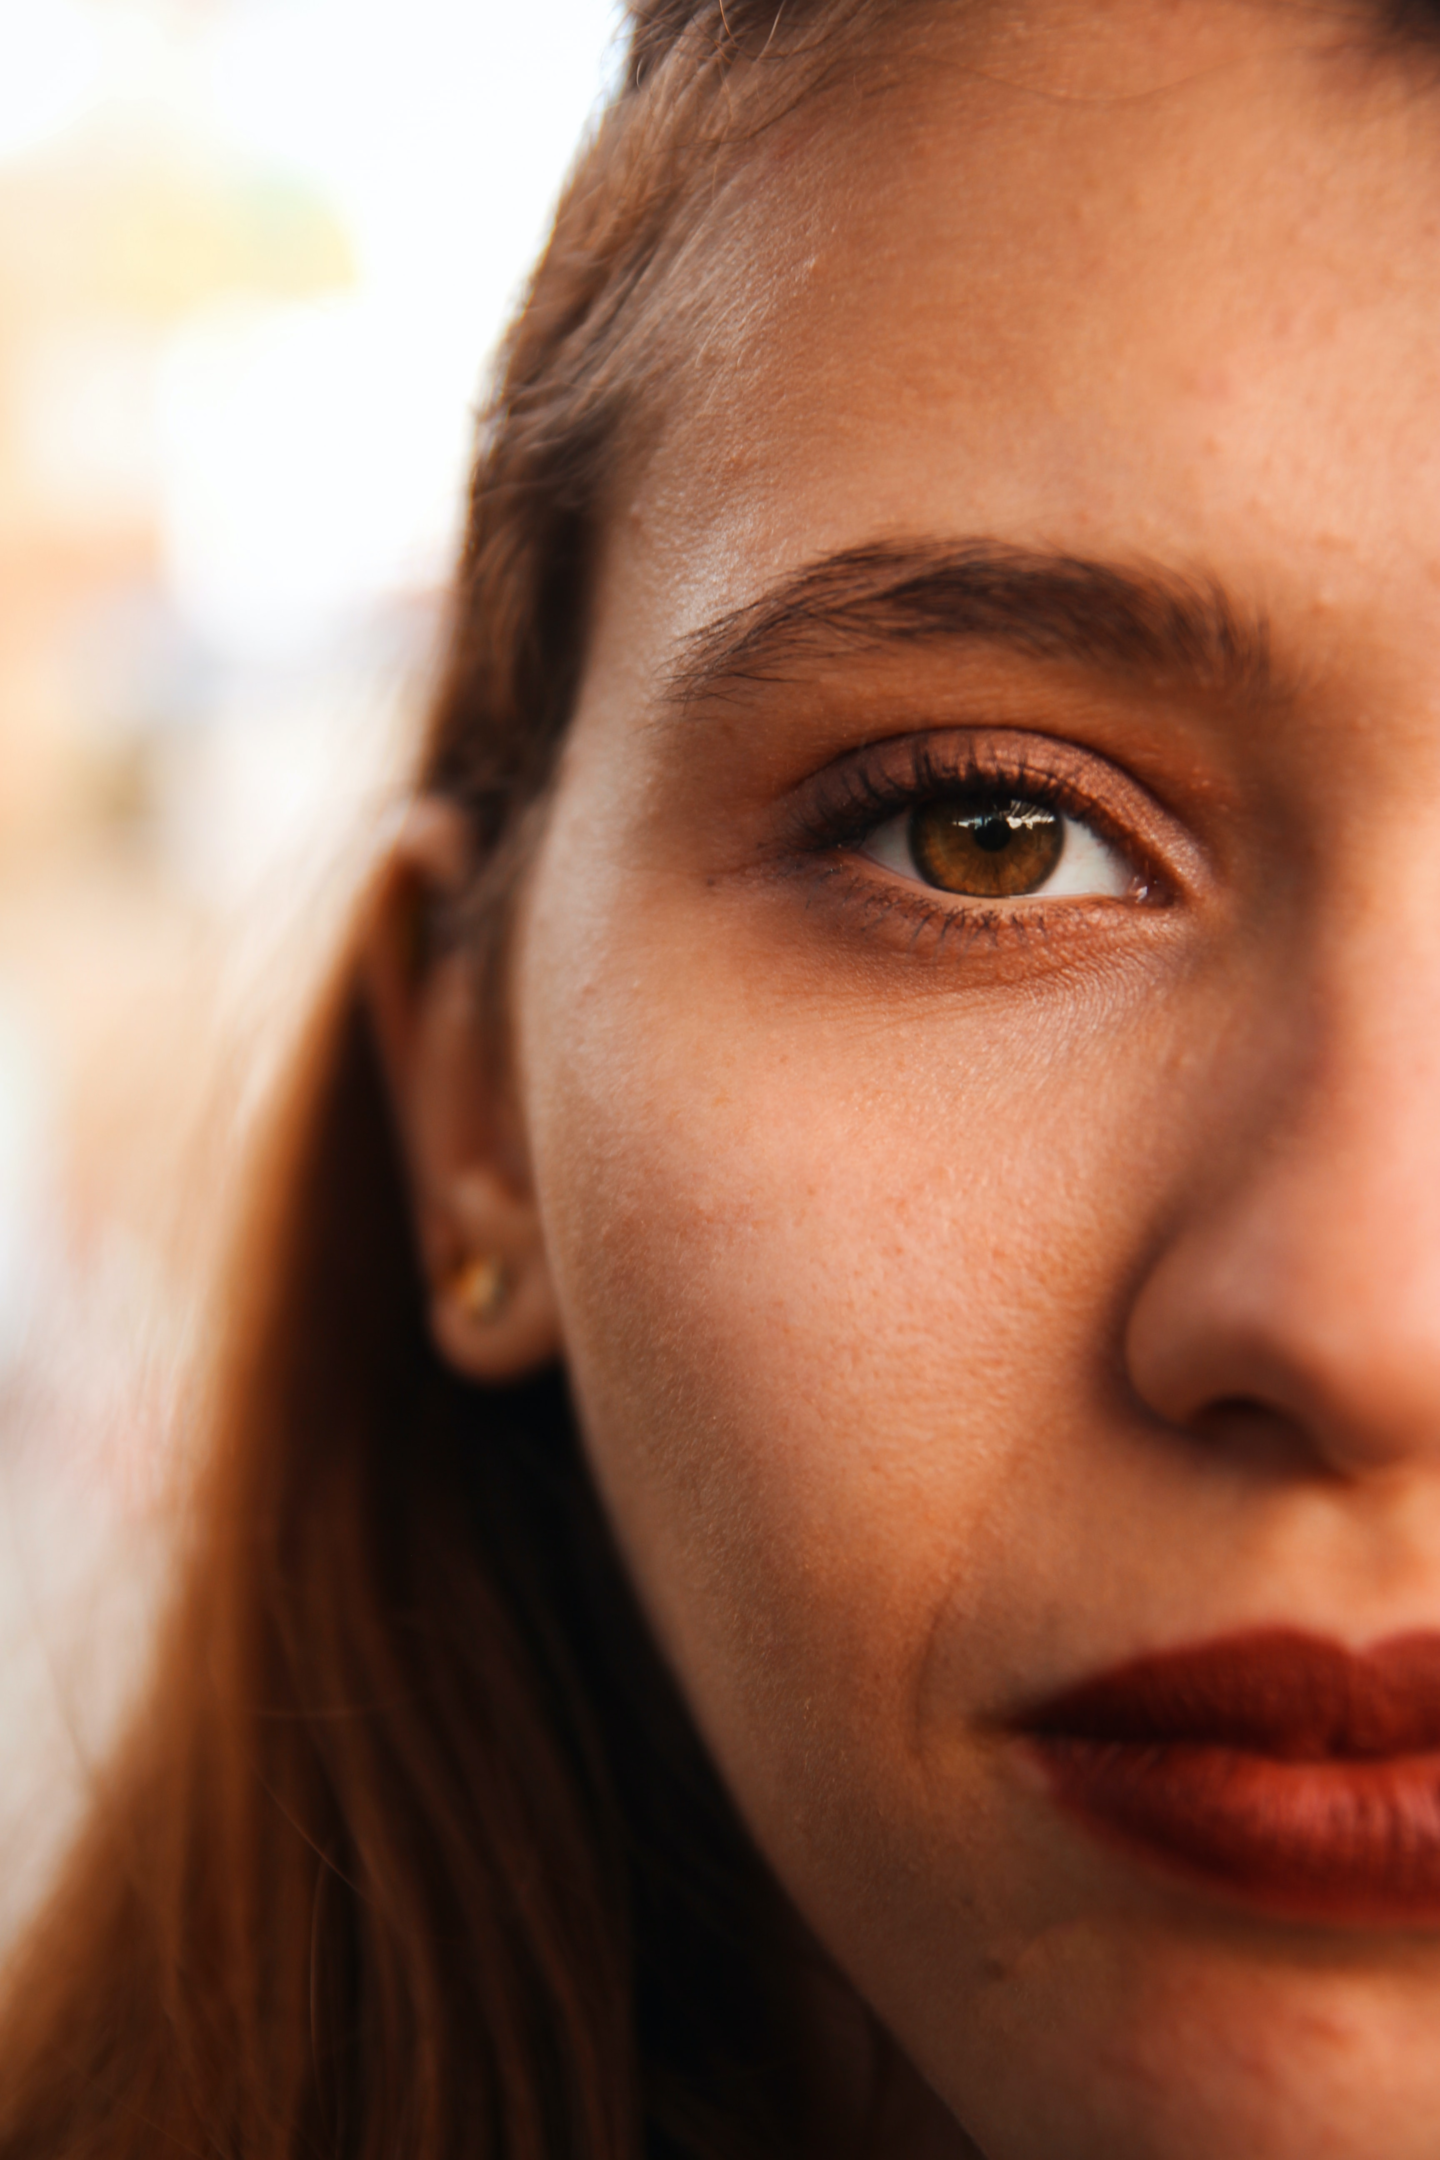 Une image montrant la moitié du visage d'une jeune femme aux yeux marrons.
Les images et logos vectorisés permettent d'éviter l'effet flou et perdre en qualité